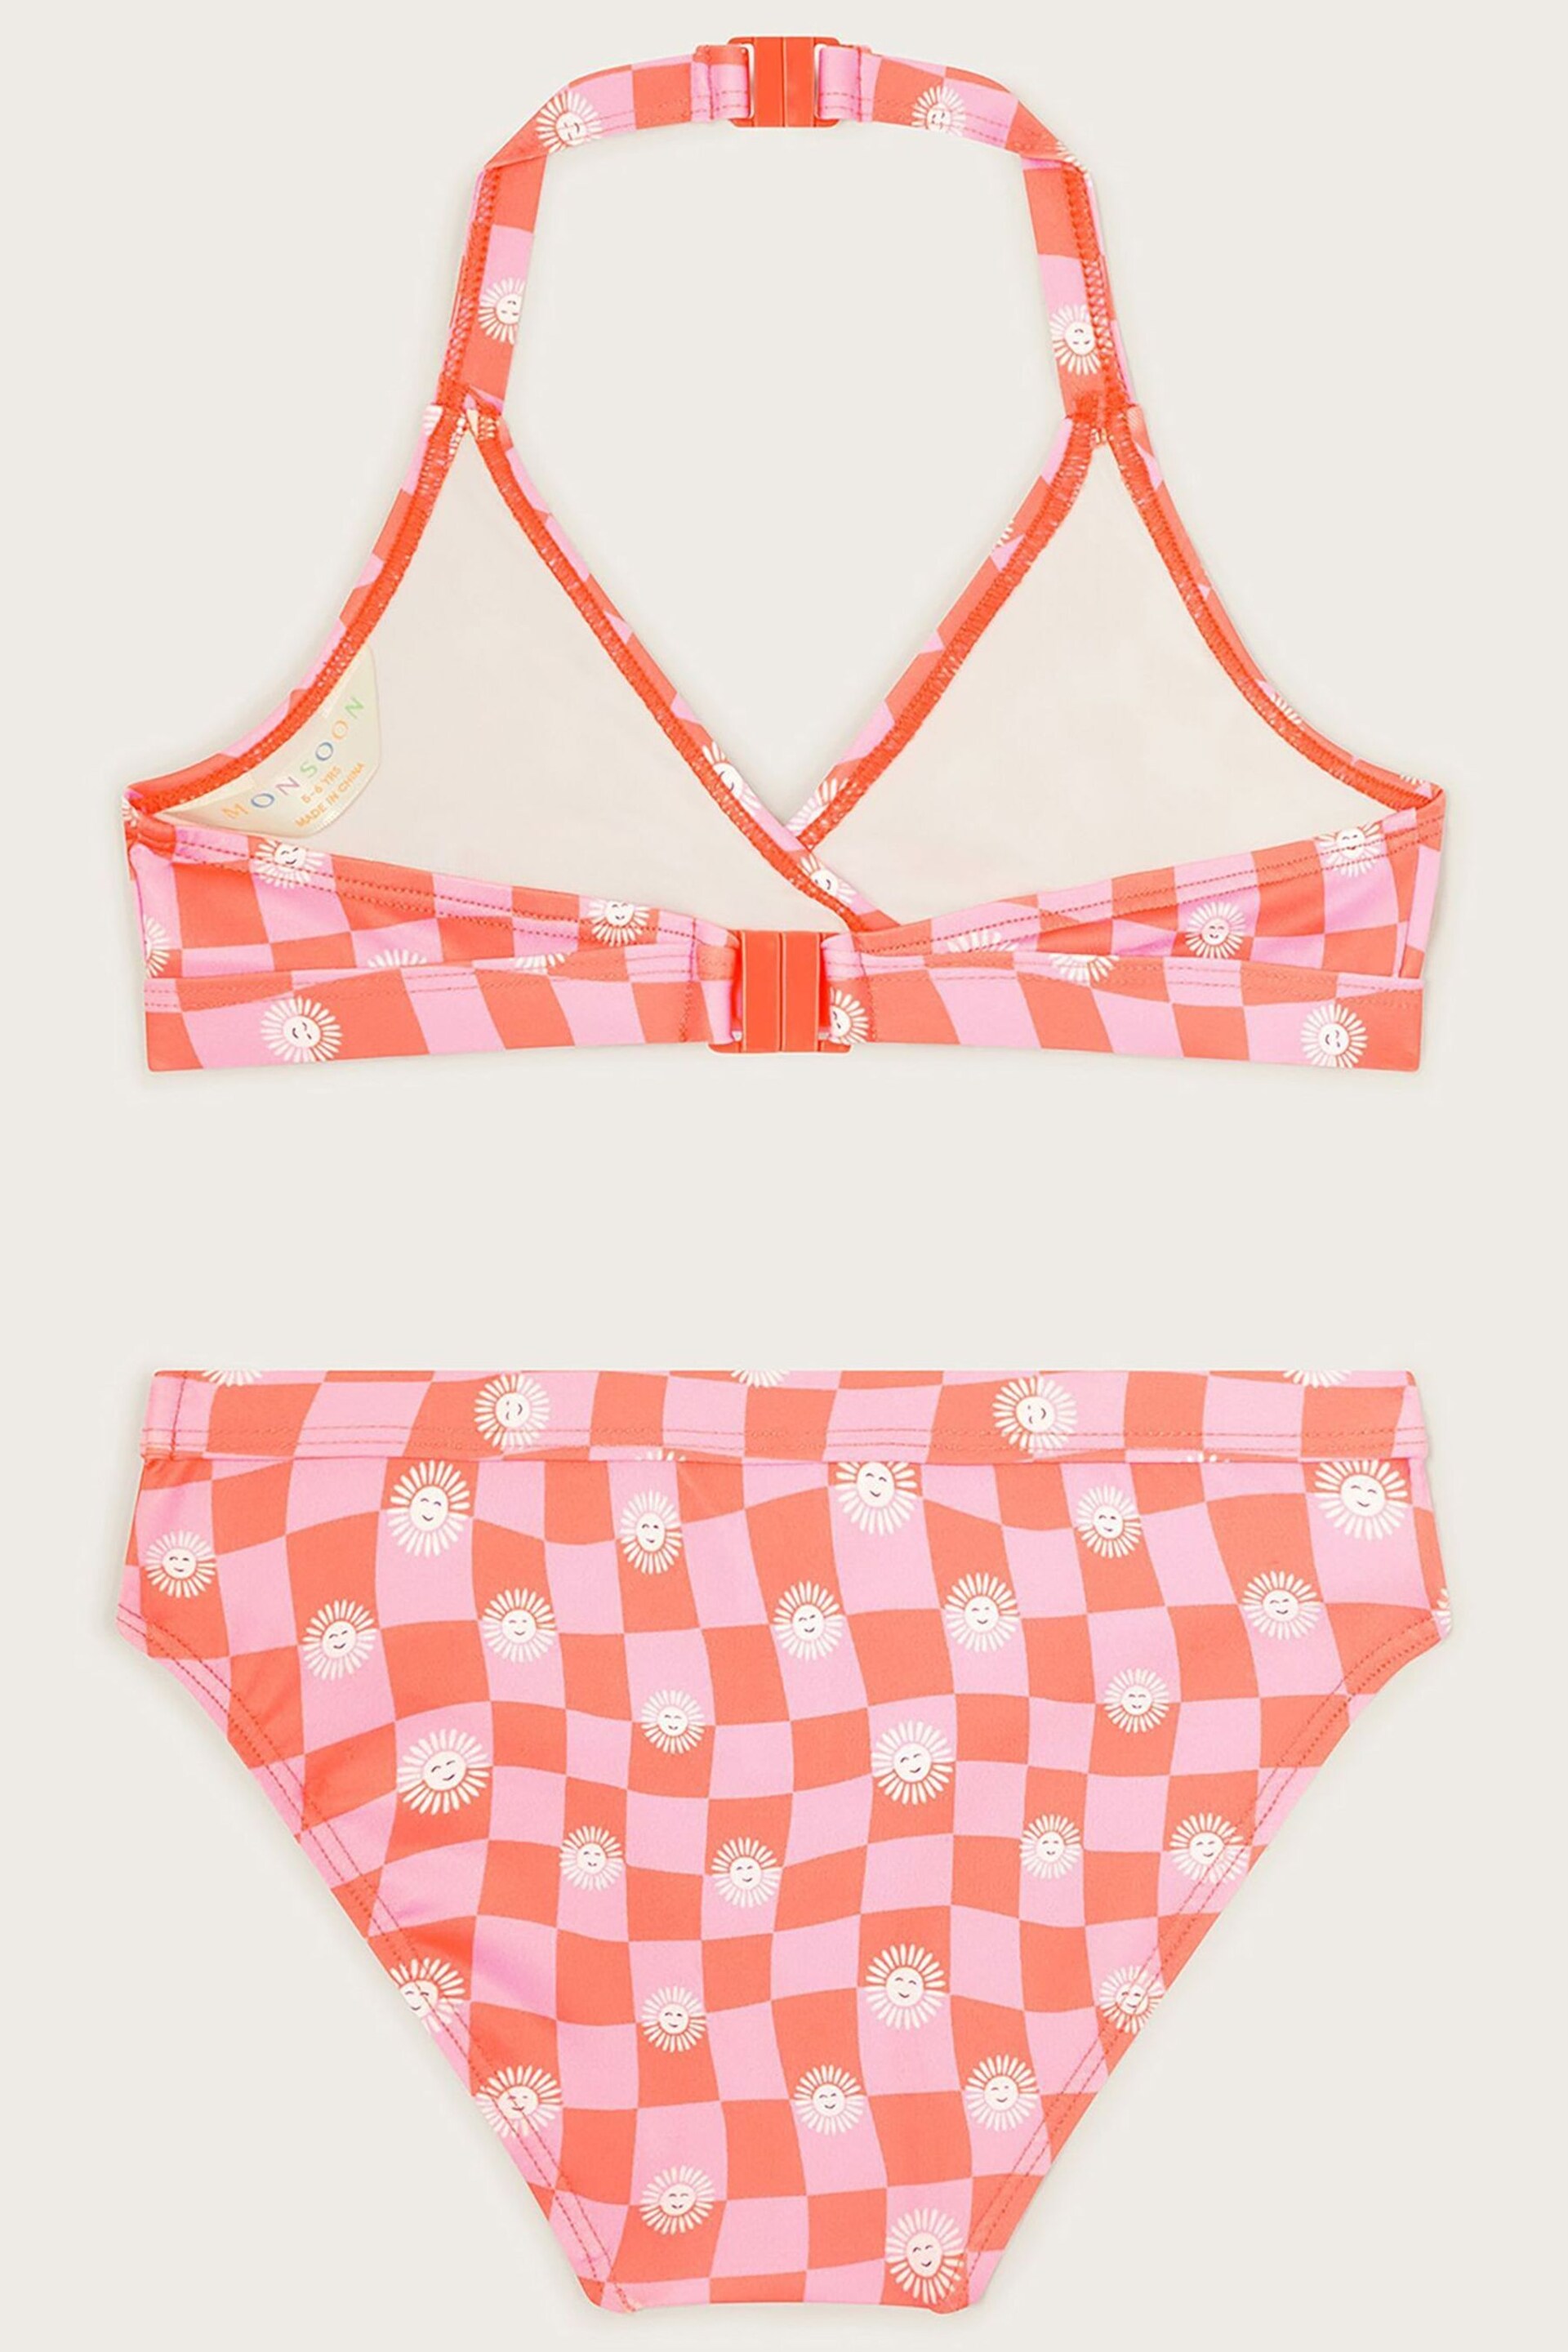 Monsoon Pink Check Bikini Set - Image 2 of 3